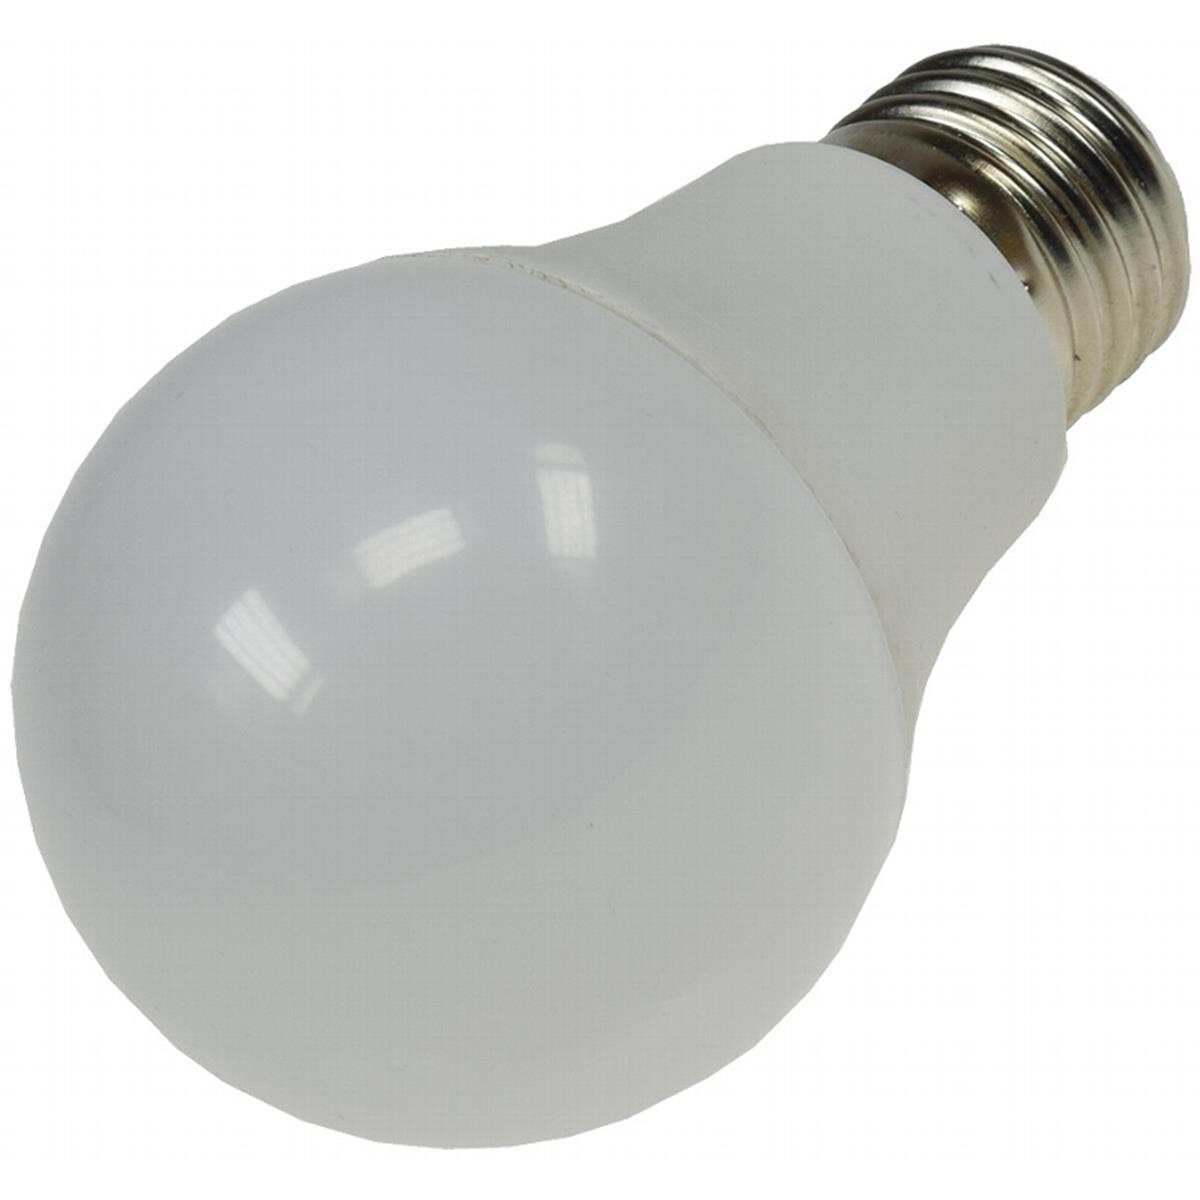 LED Glühlampe E27 "G70 COMODA" 3000k, 806lm, 230V/10W, 160°, warmweiß